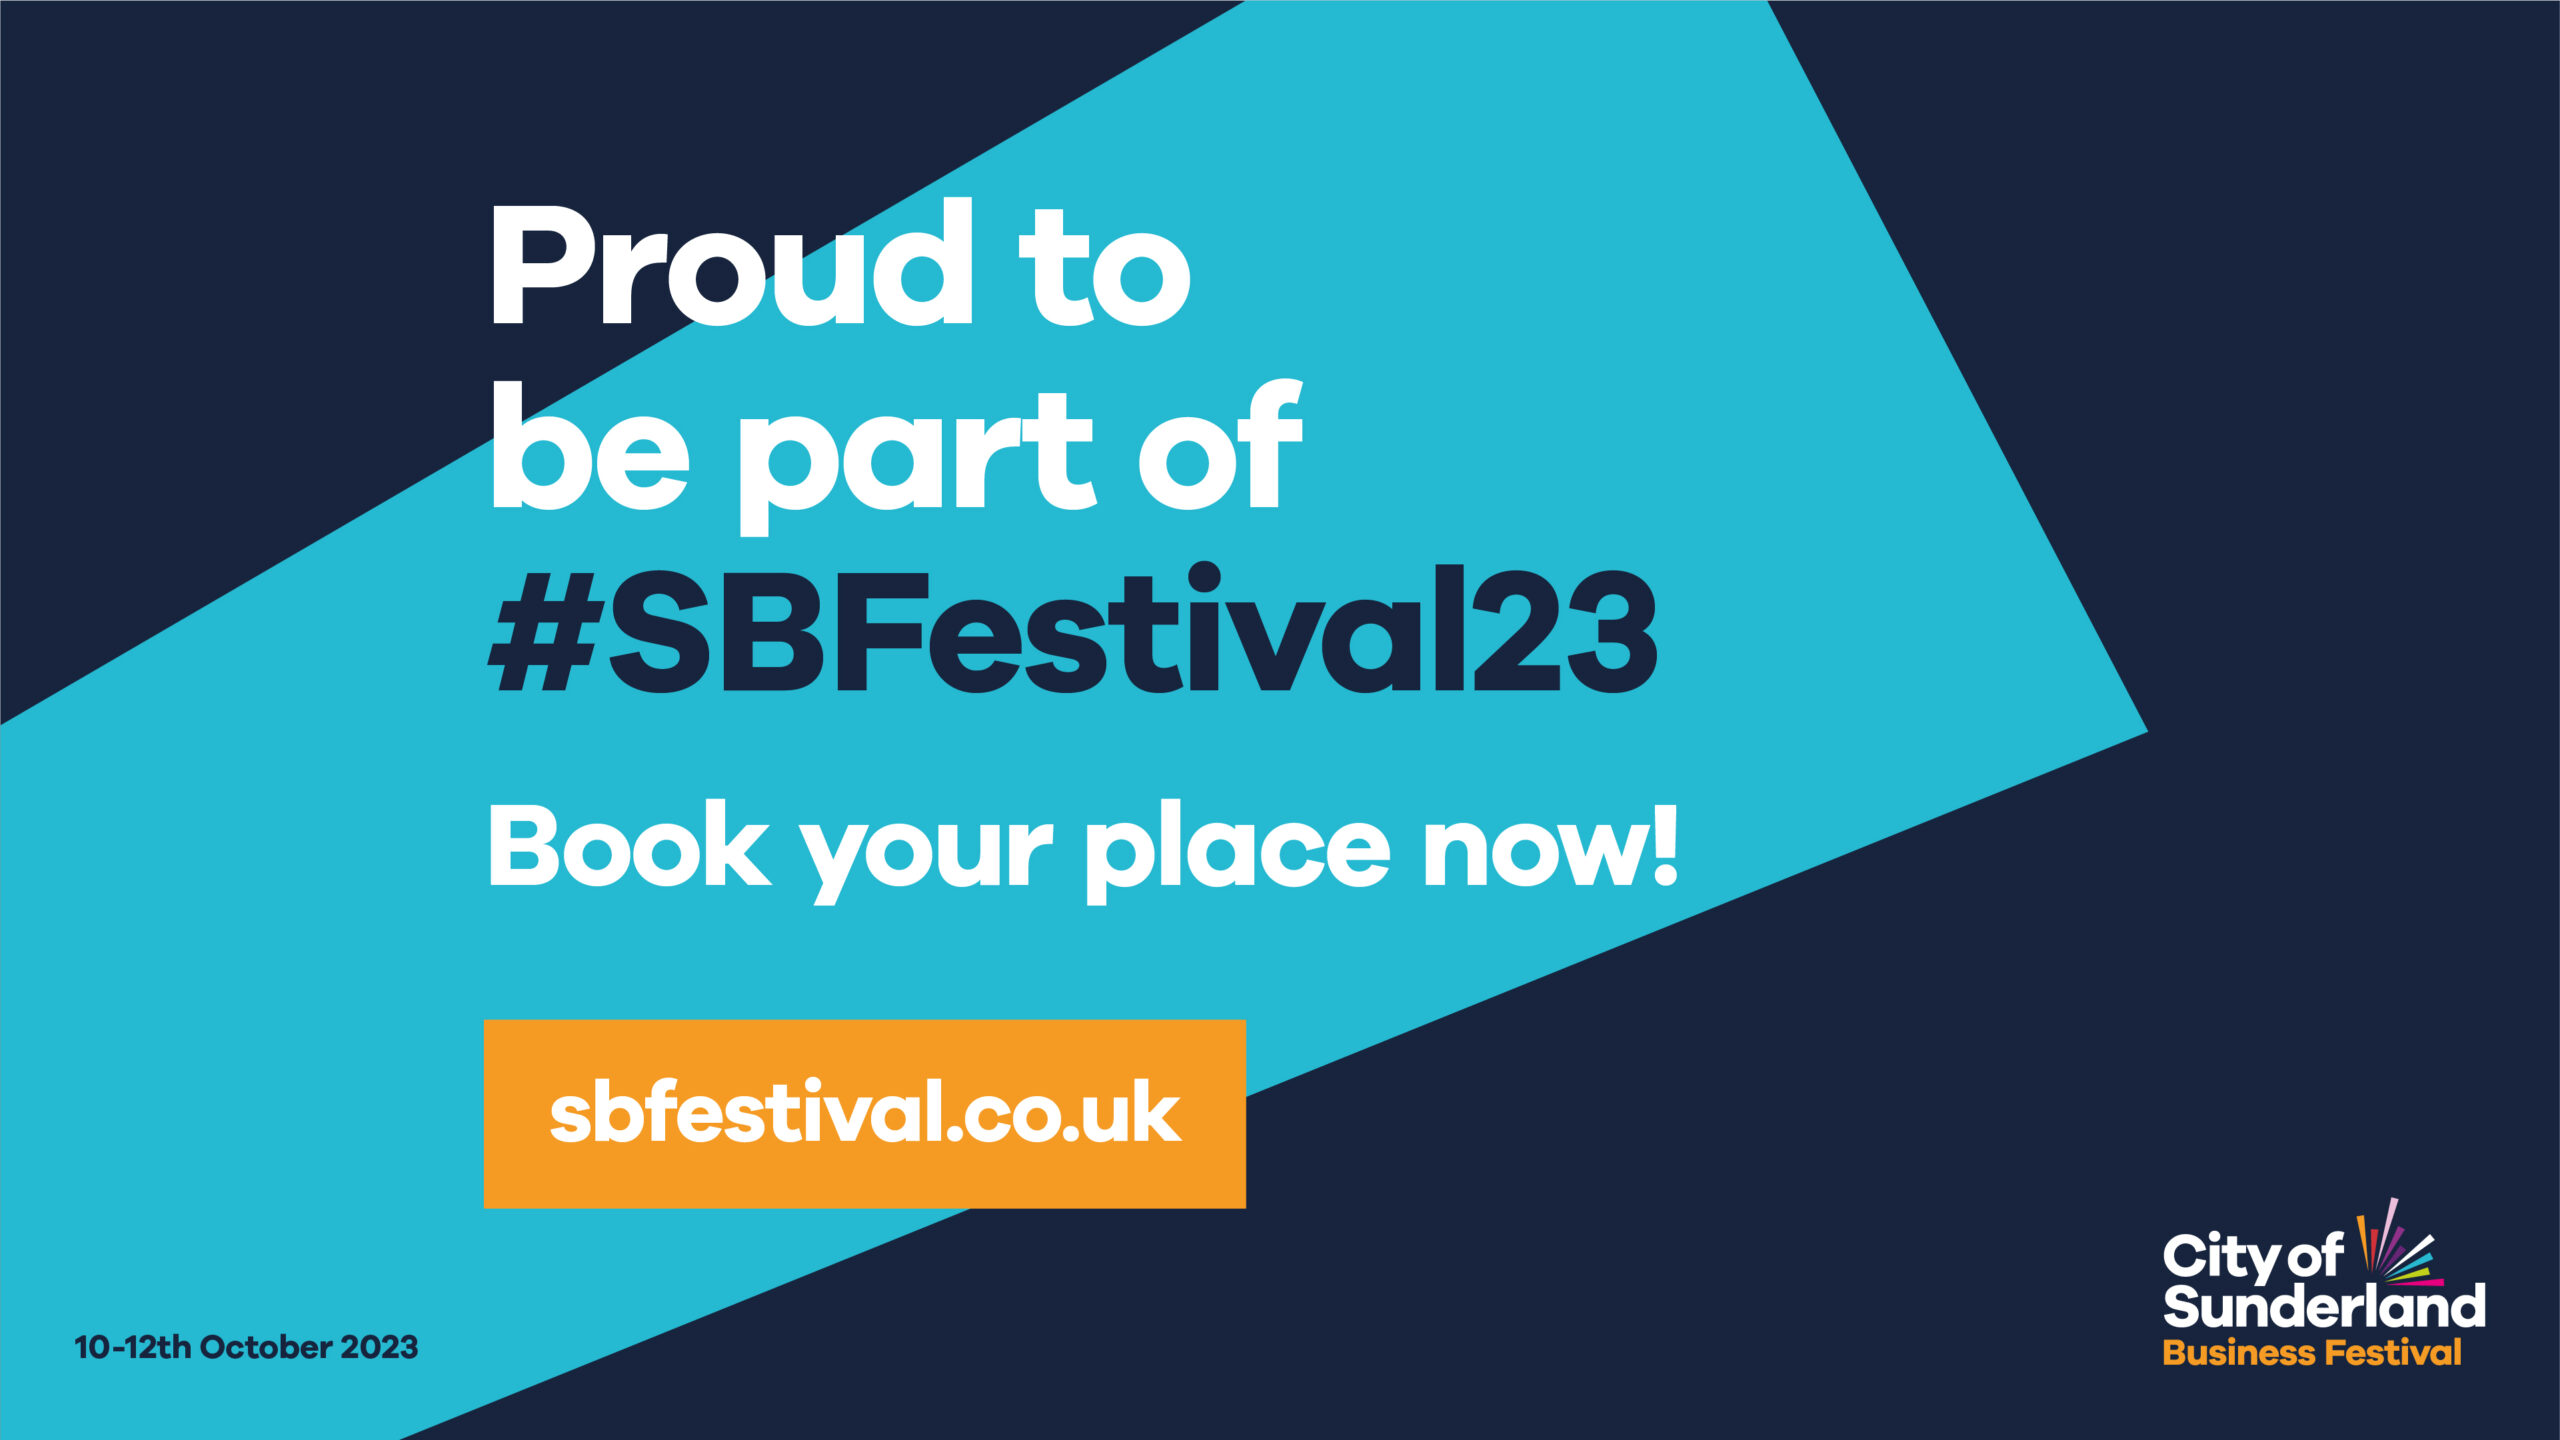 Sunderland Business Festival 2023